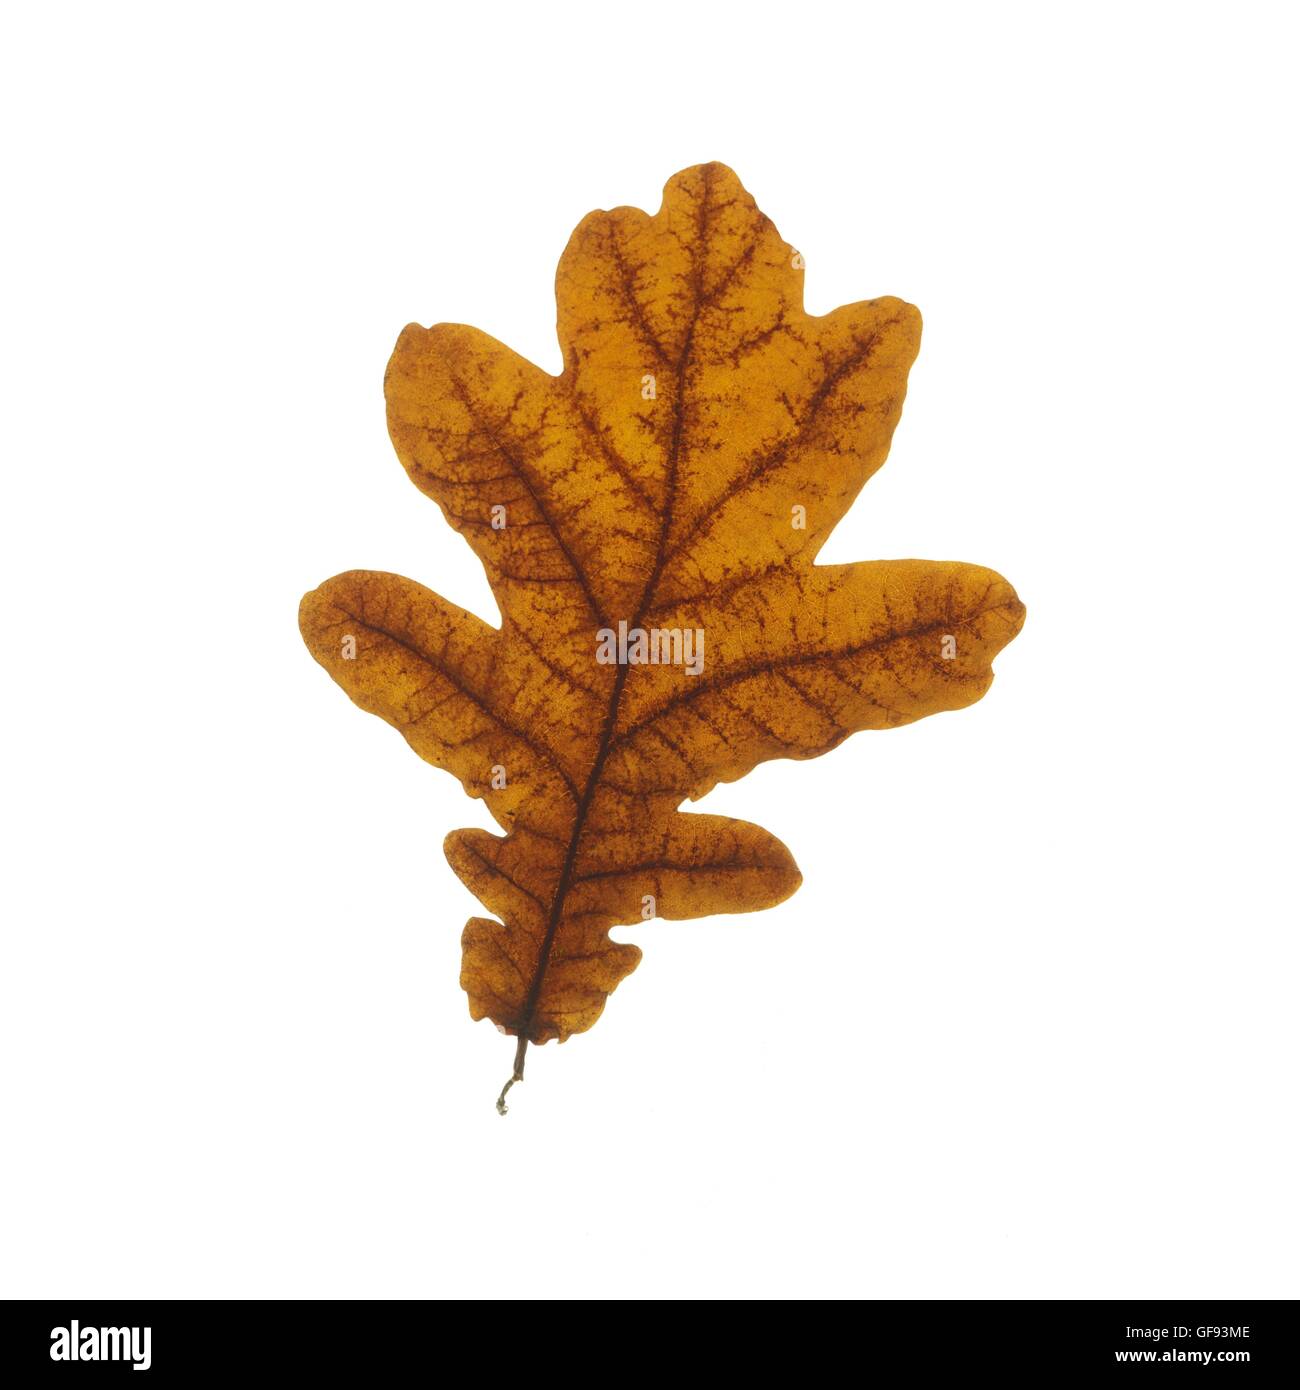 Oak (quercus) leaf, studio shot. Stock Photo